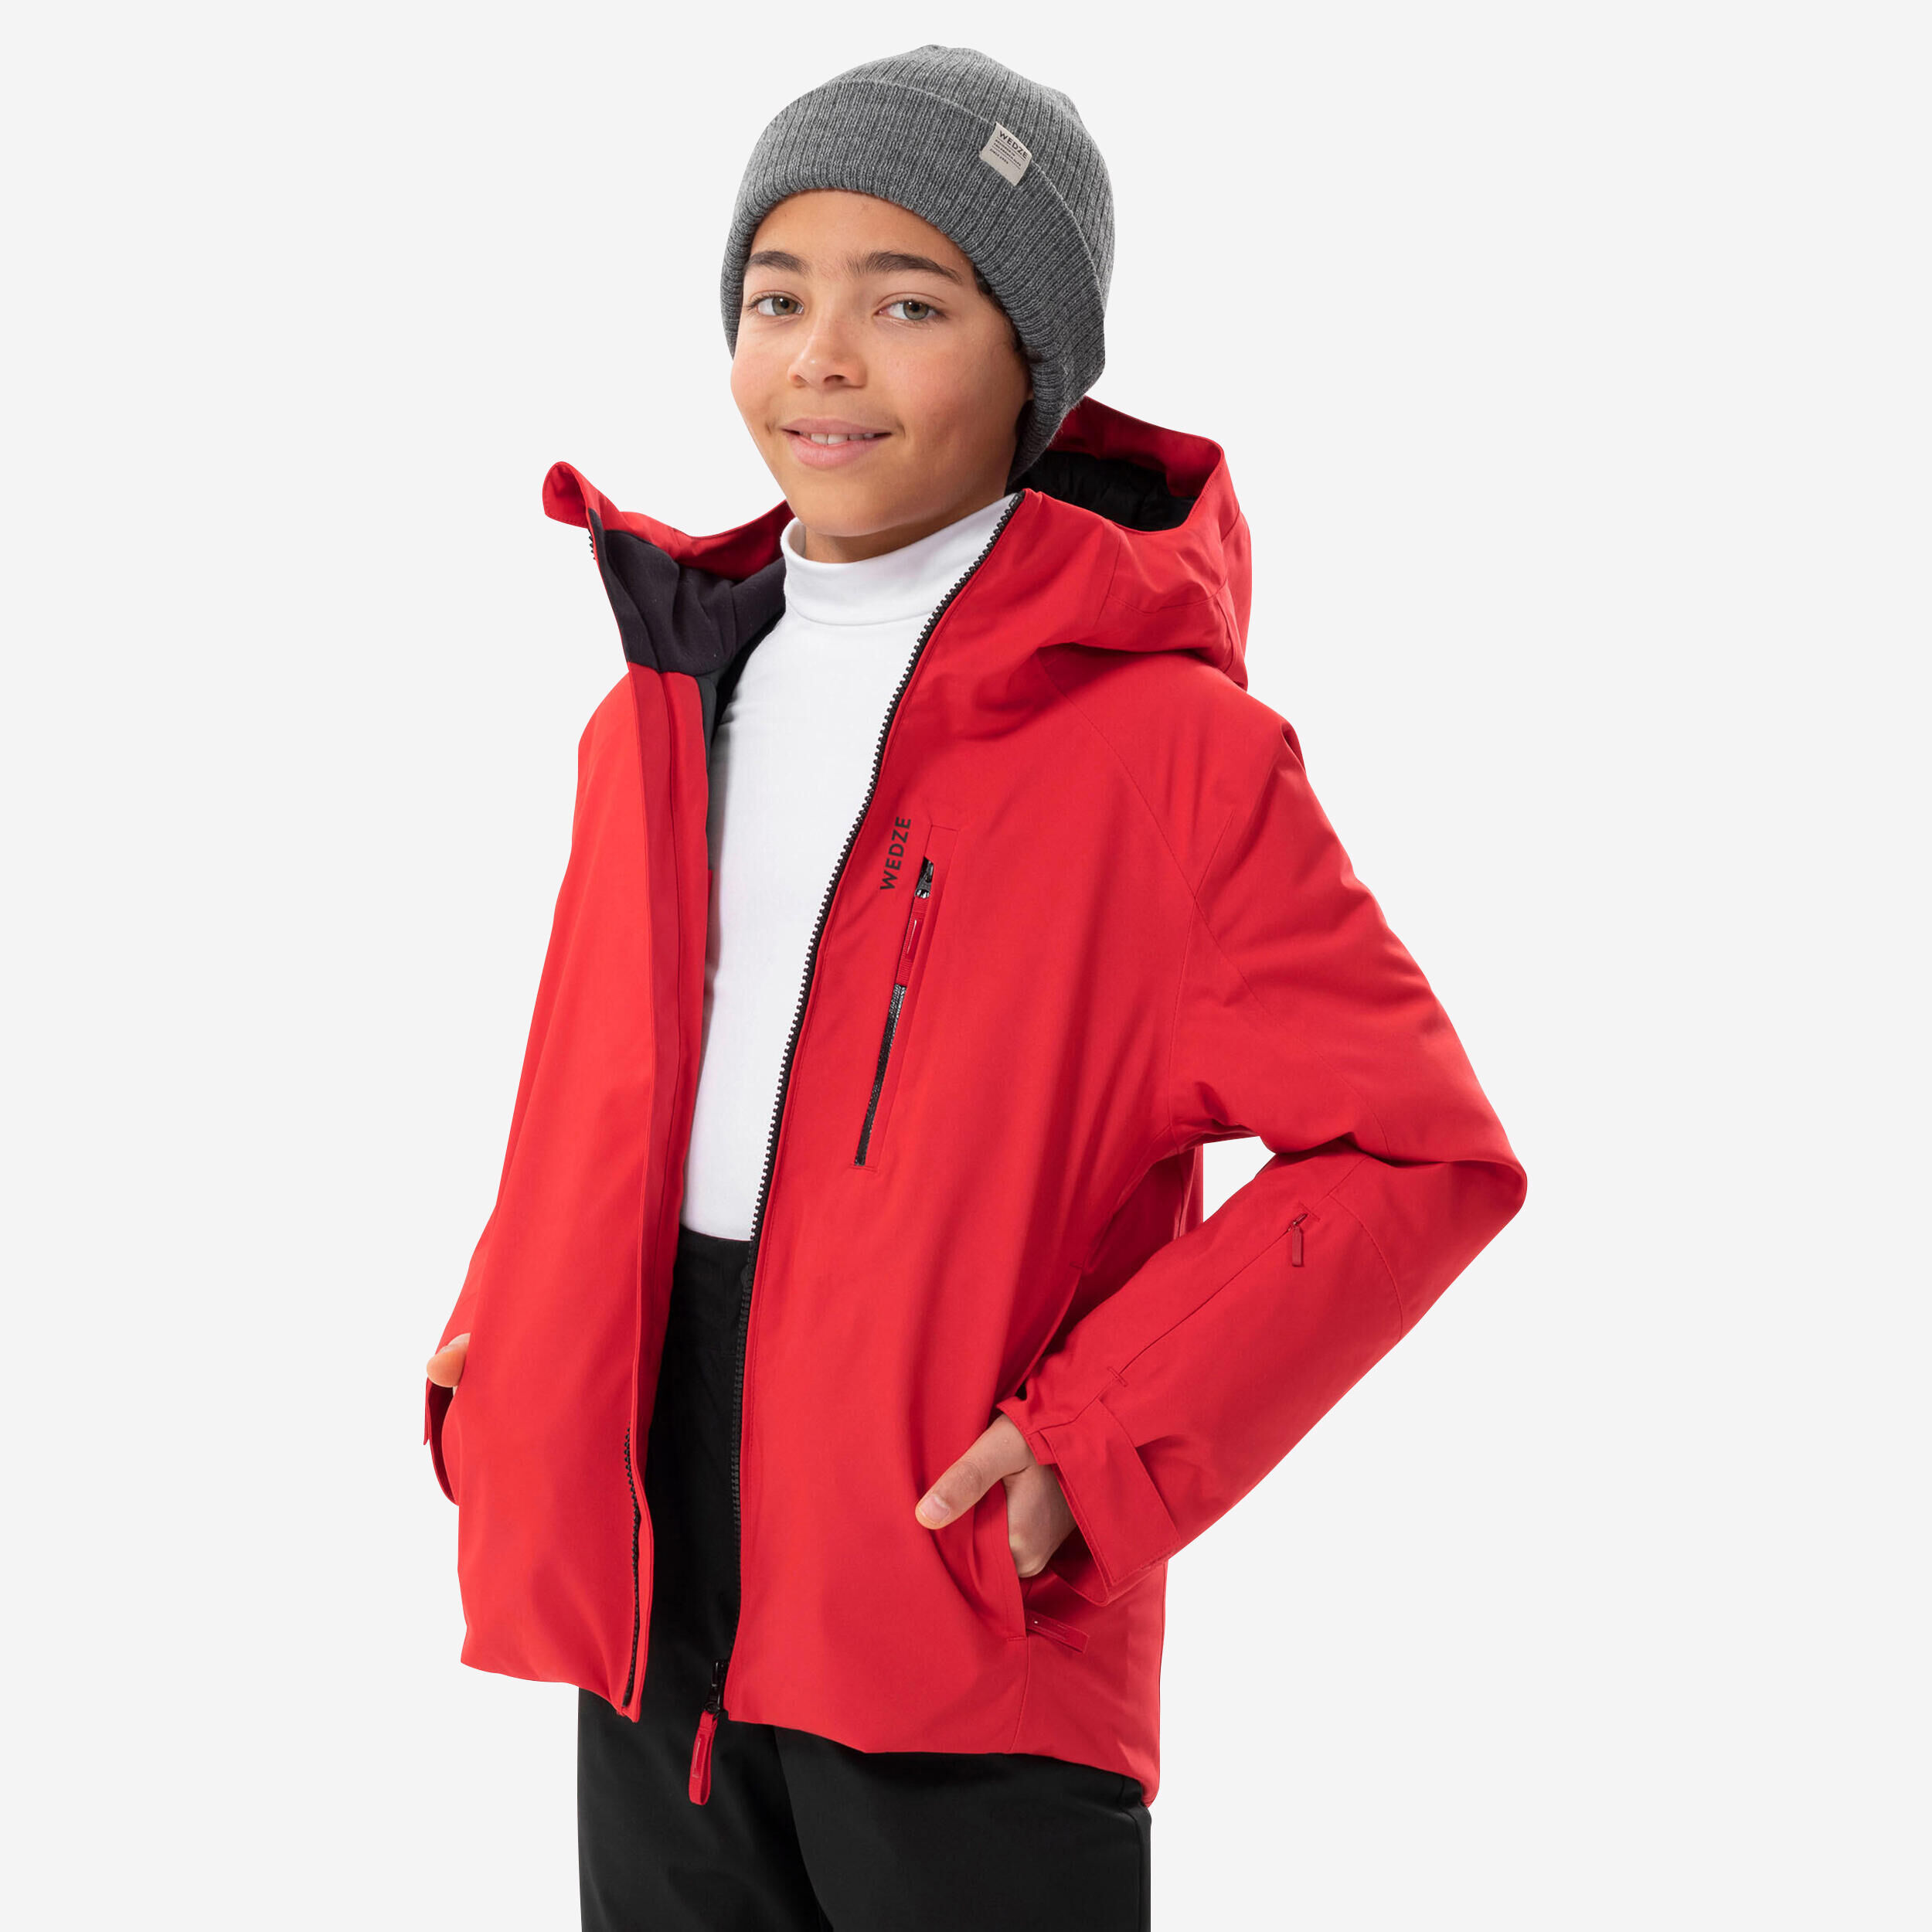 WEDZE Kids’ Warm and Waterproof Ski Jacket 550 - Red